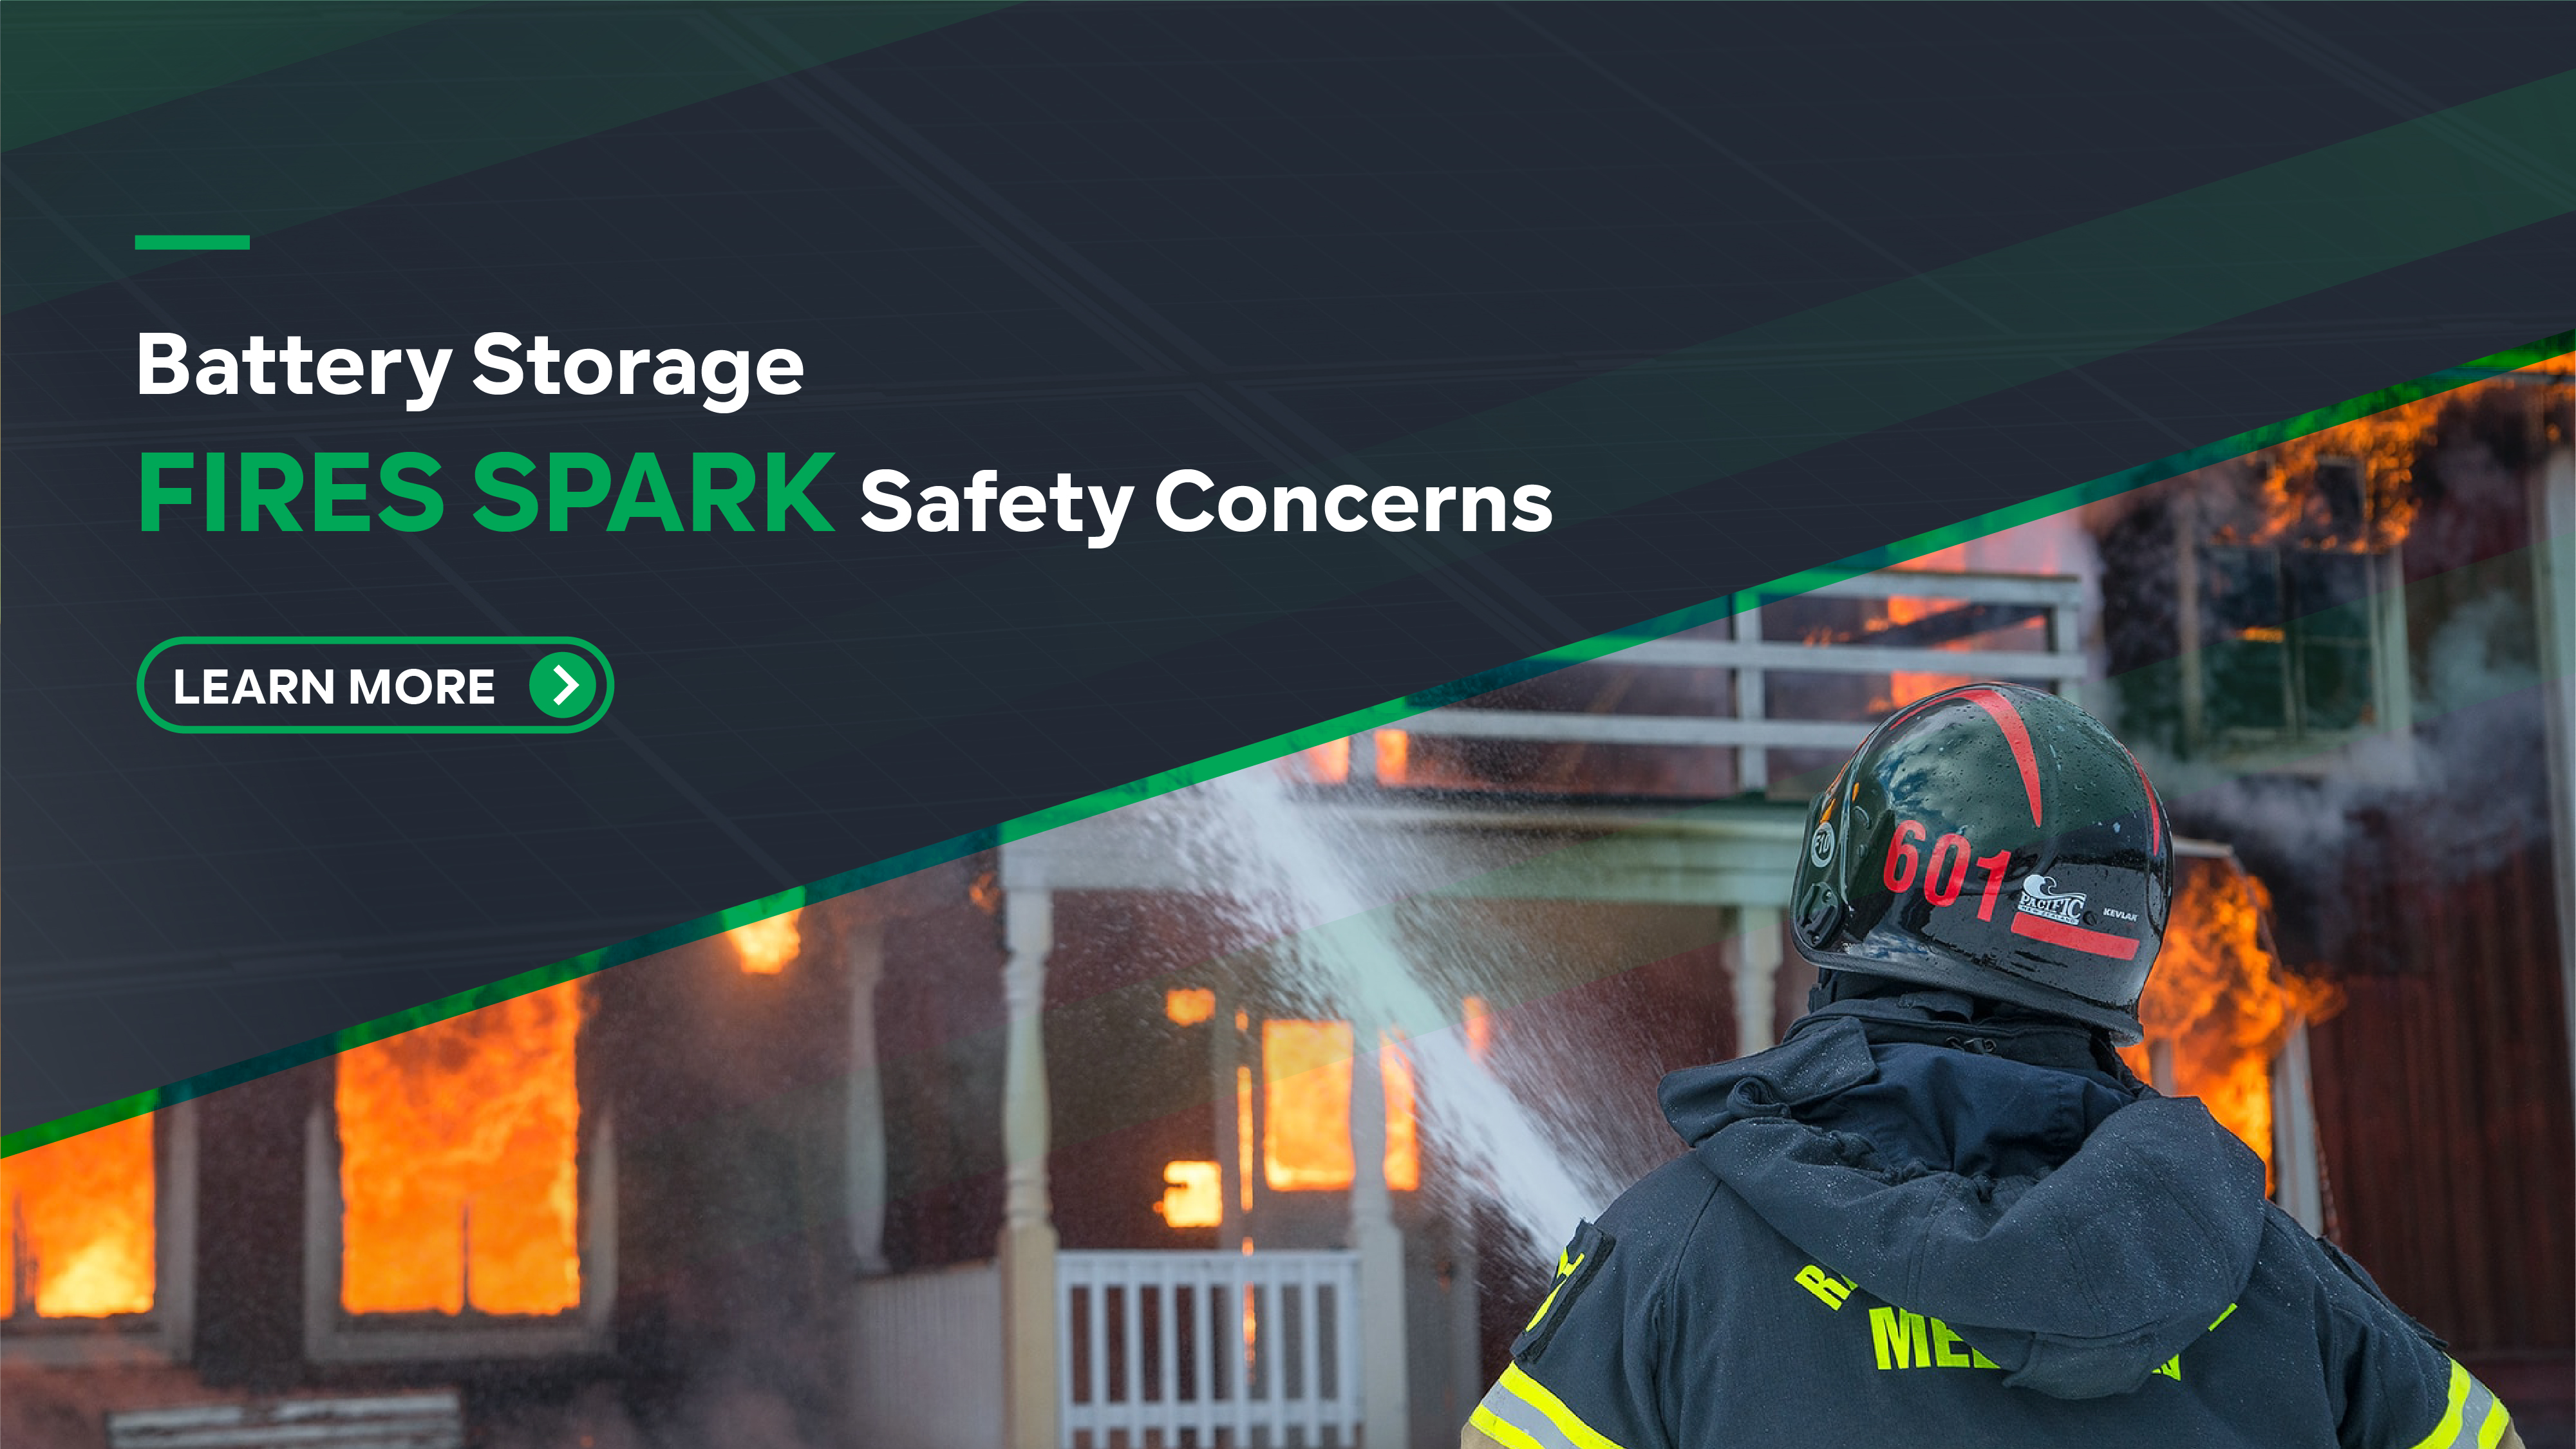 Battery Storage Fires Spark Safety Concerns